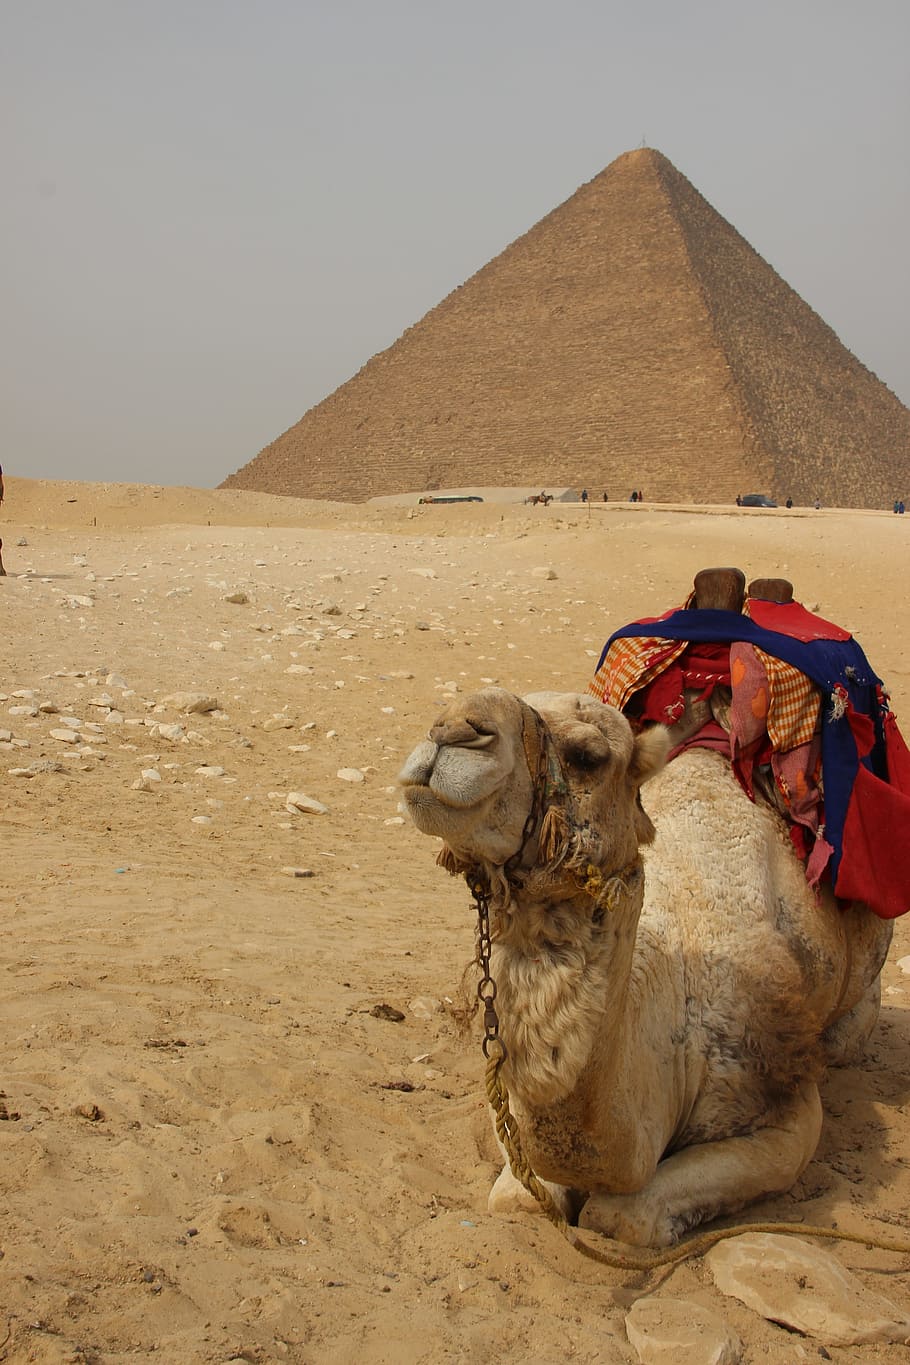 brown, camel, lying, sand, Egypt, Africa, Pyramid, traveling, desert, sahara Desert